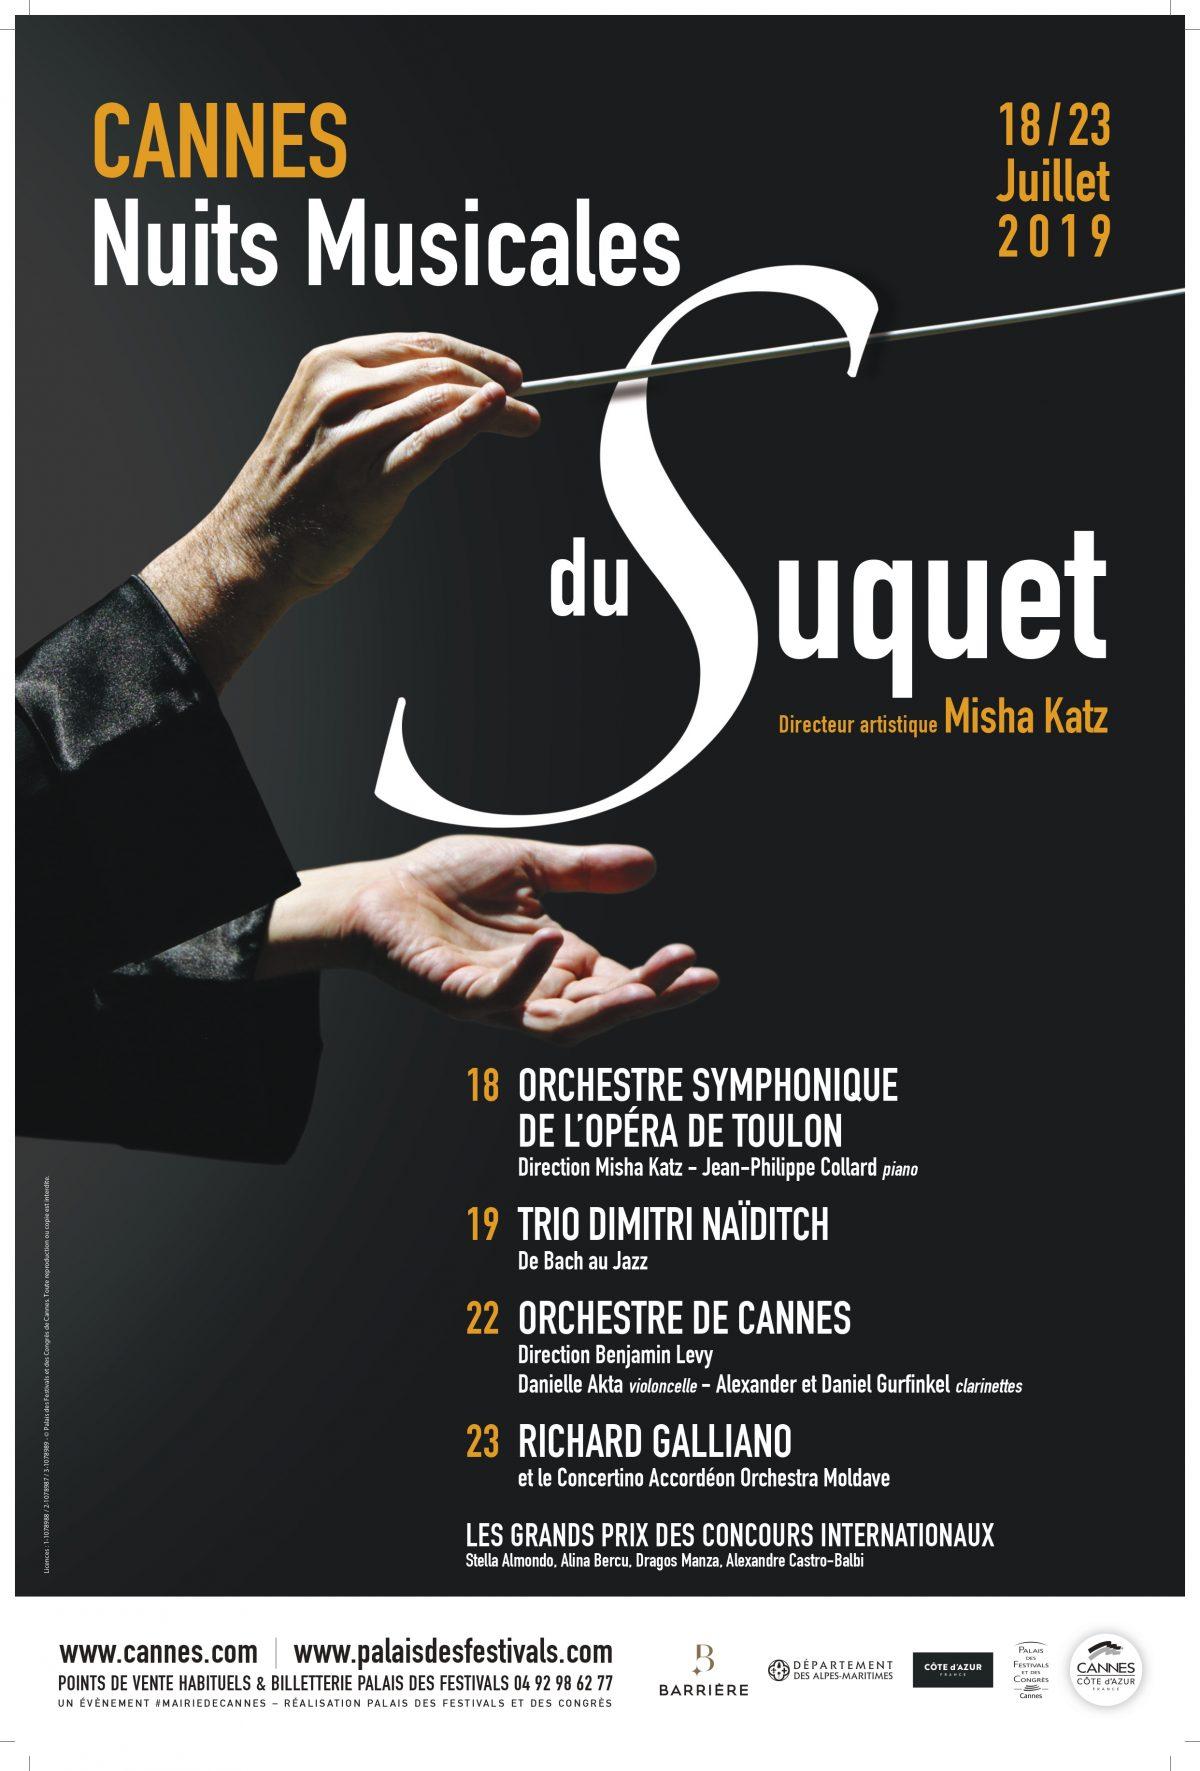 Nuits Musicales du Suquet 2019 - Cannes